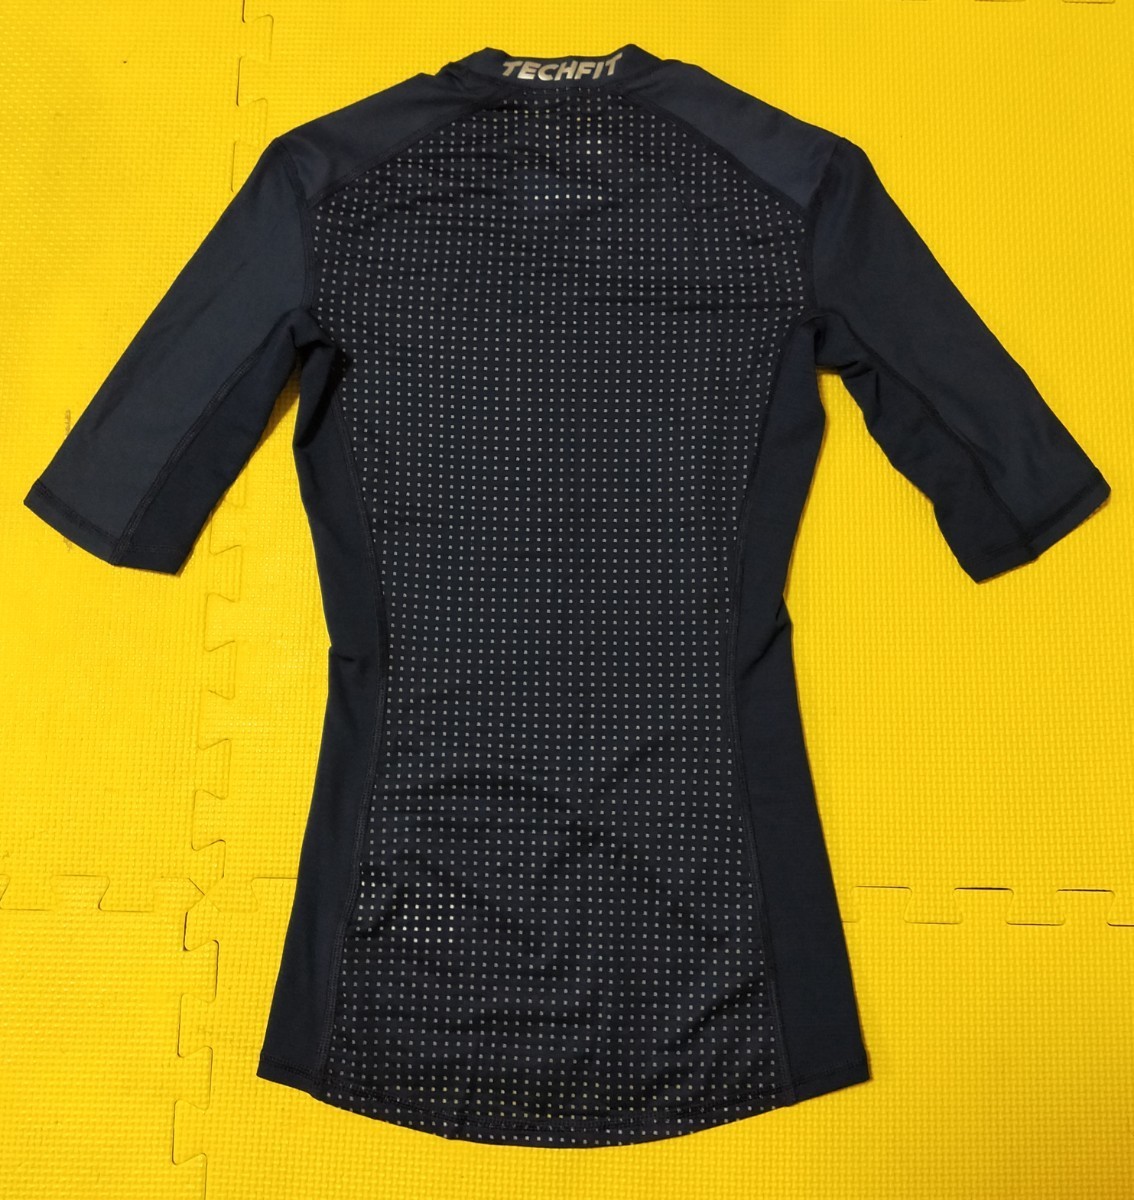 アディダス adidas climachill techfit コンプレッションシャツ インナーシャツ インナーウェア ダークネイビー Mサイズ_画像2